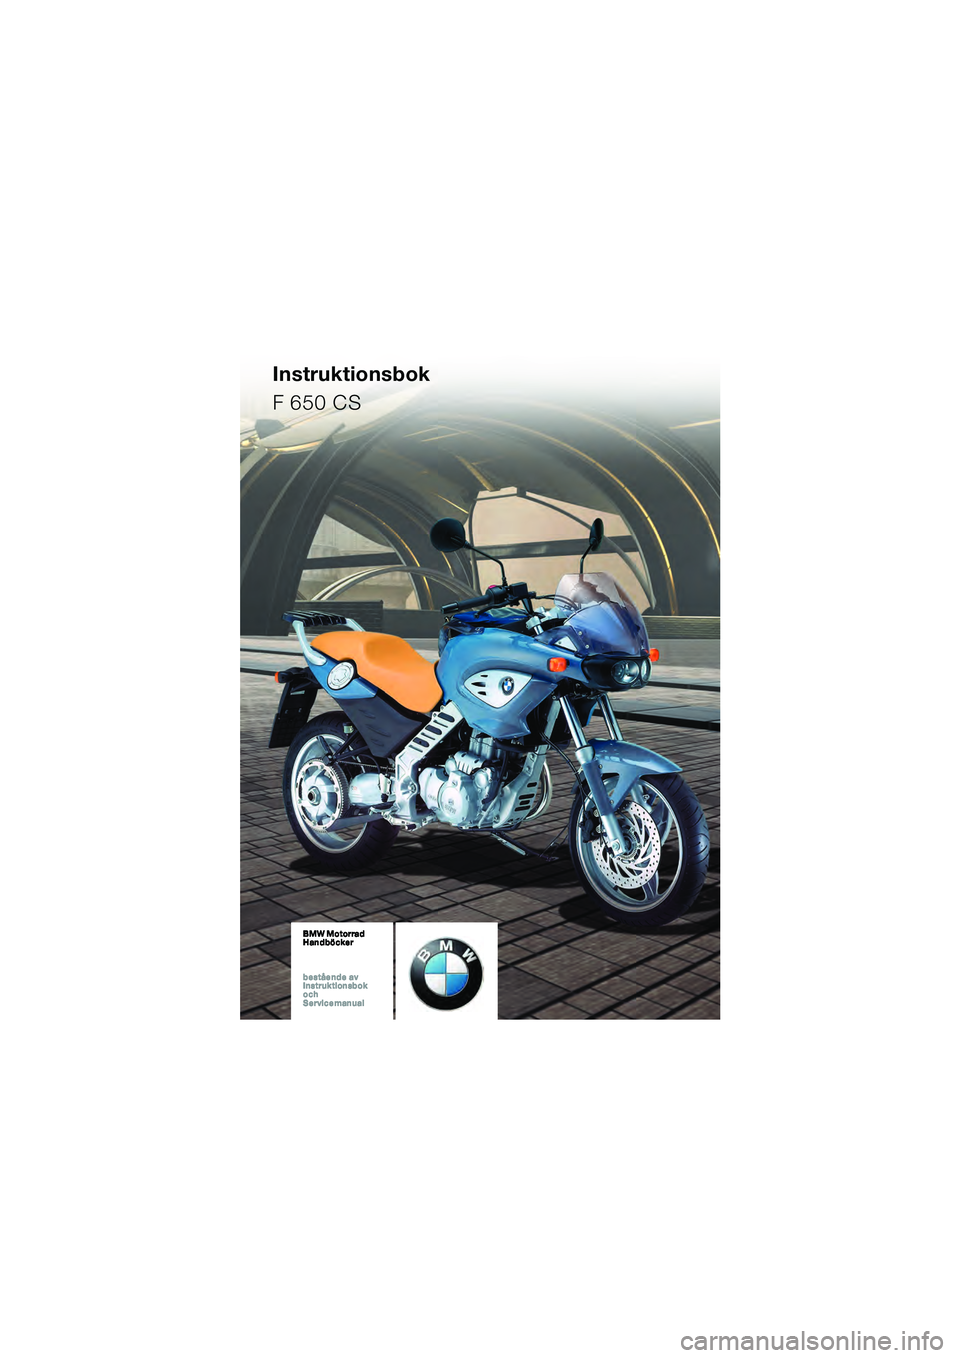 BMW MOTORRAD F 650 CS 2003  Instruktionsbok (in Swedish) Instruktionsbok
F 650 CS
10K14bks2.book  Seite 1  Montag, 15. September 2003  1:13 13 